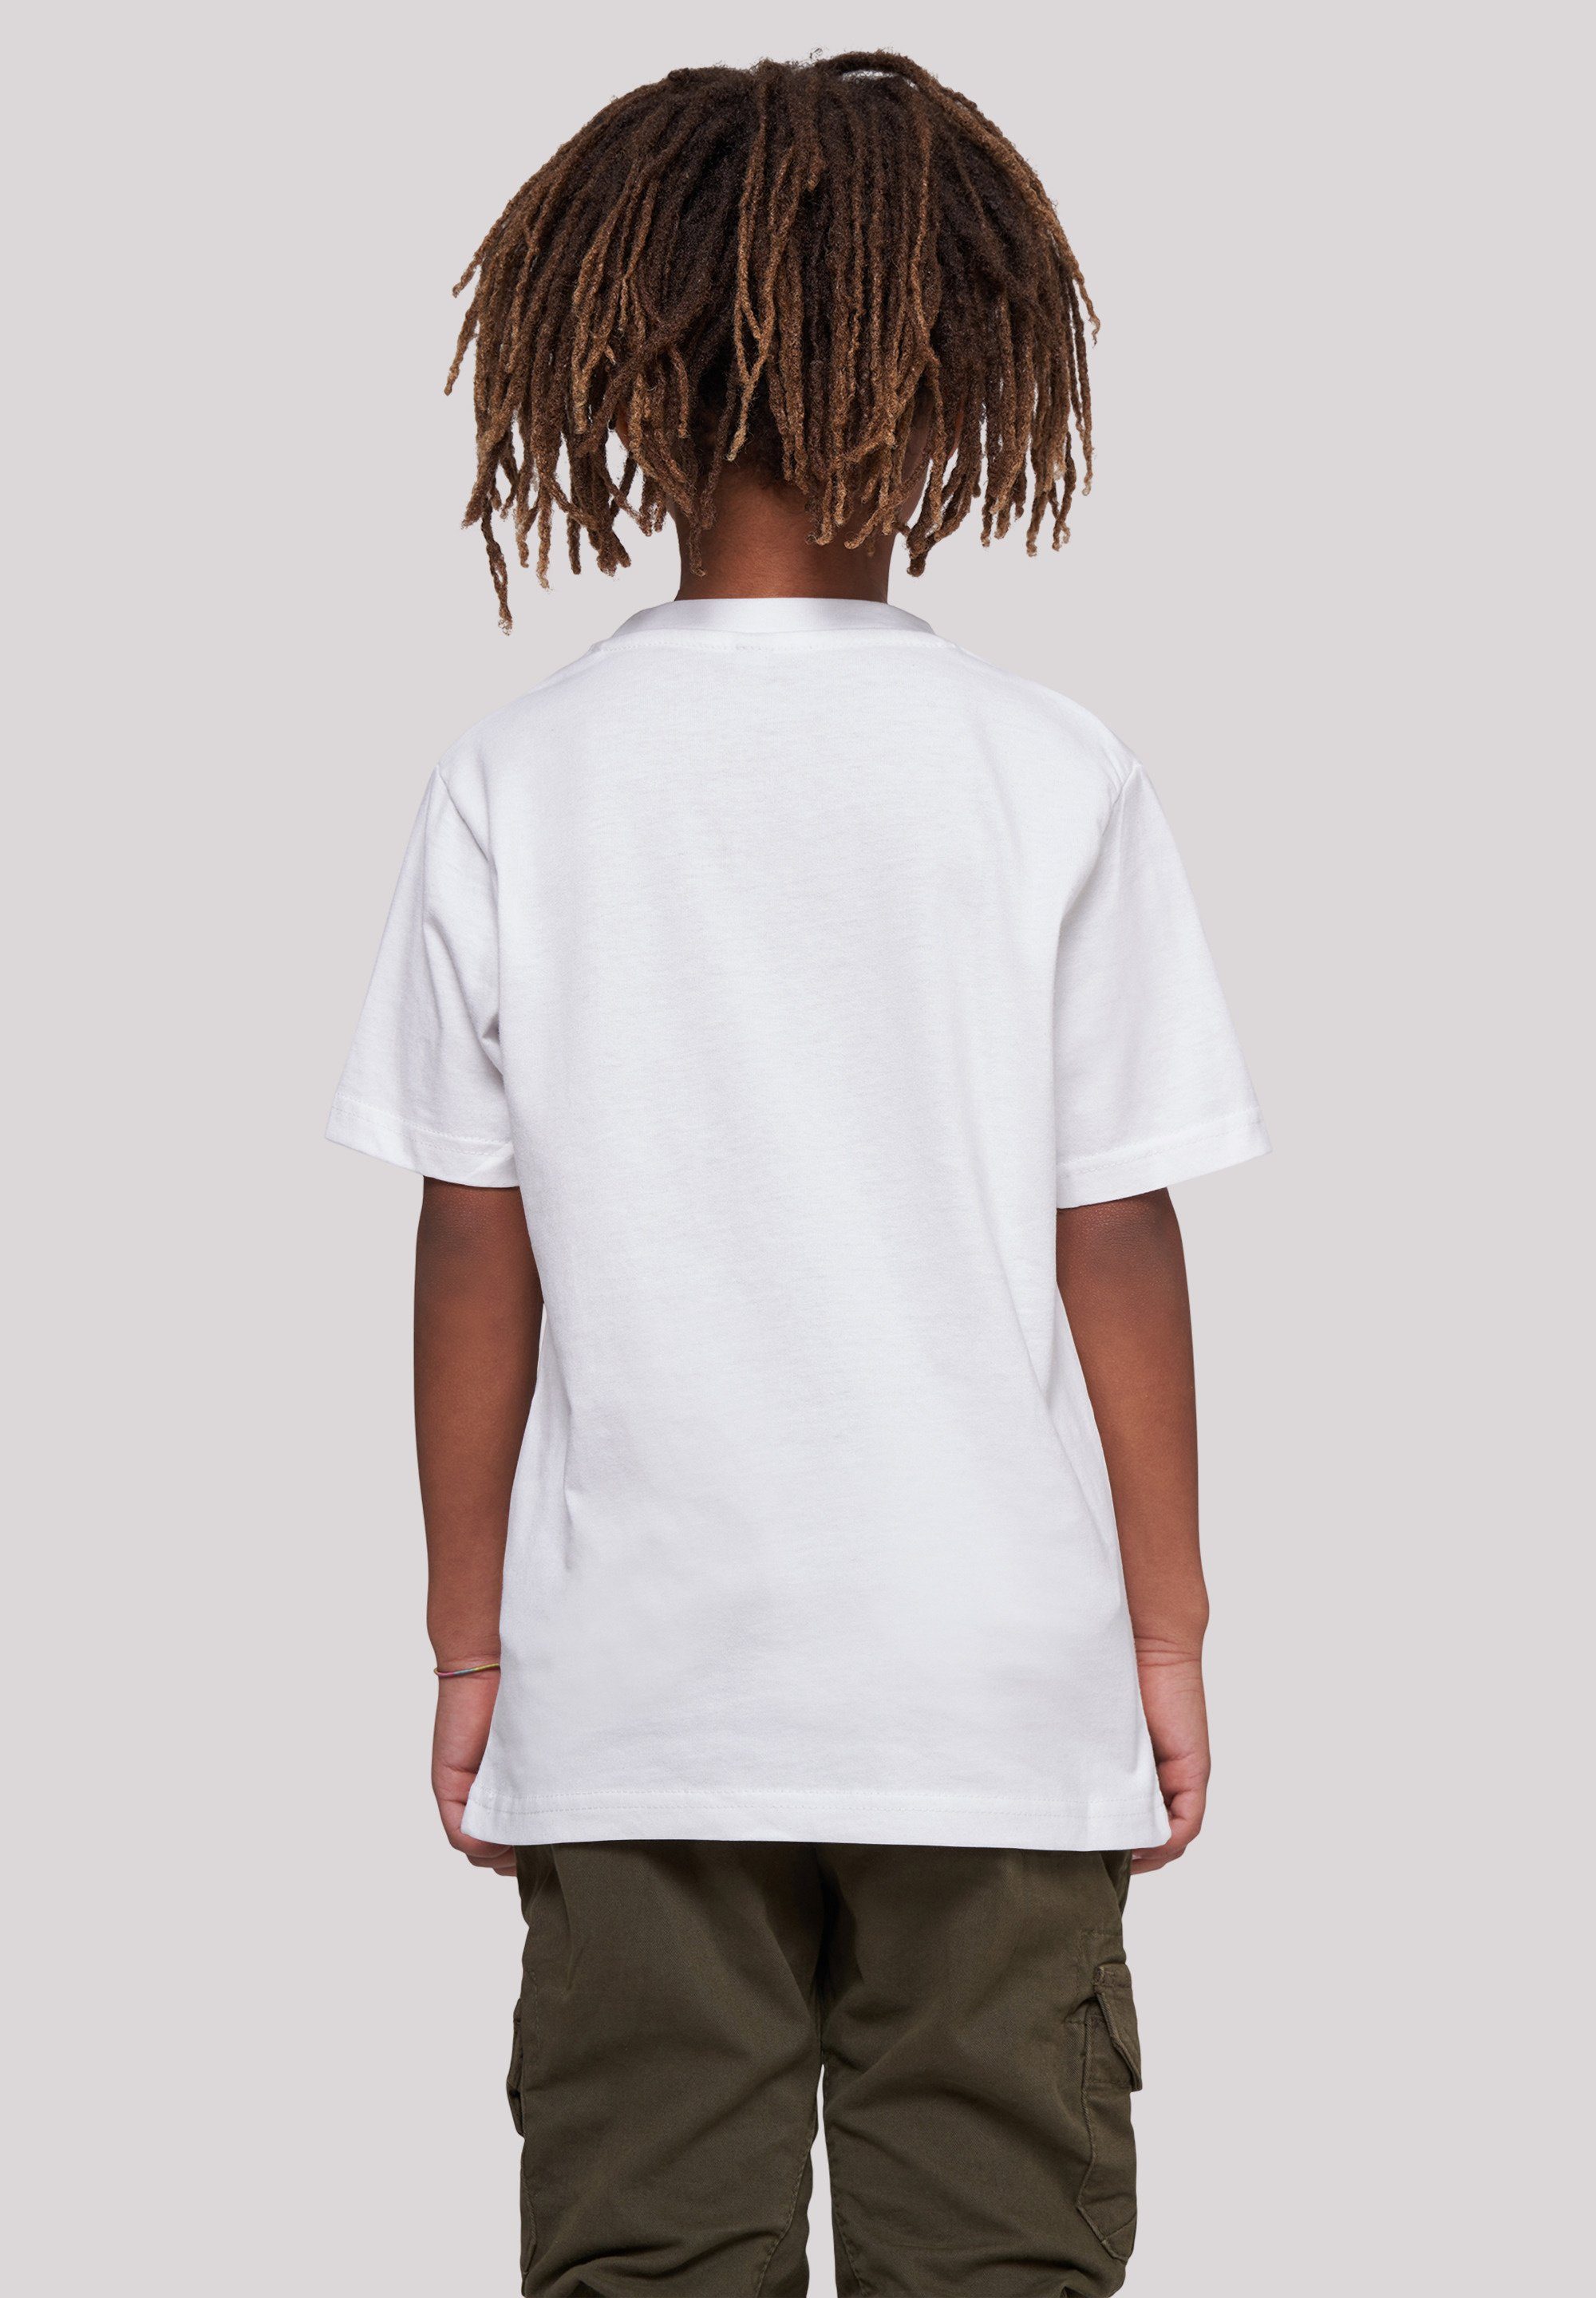 Dino T-Shirt Kinder,Premium Bamm Merch,Jungen,Mädchen,Bedruckt Feuerstein weiß Familie F4NT4STIC Die Unisex T-Shirt And Bamm